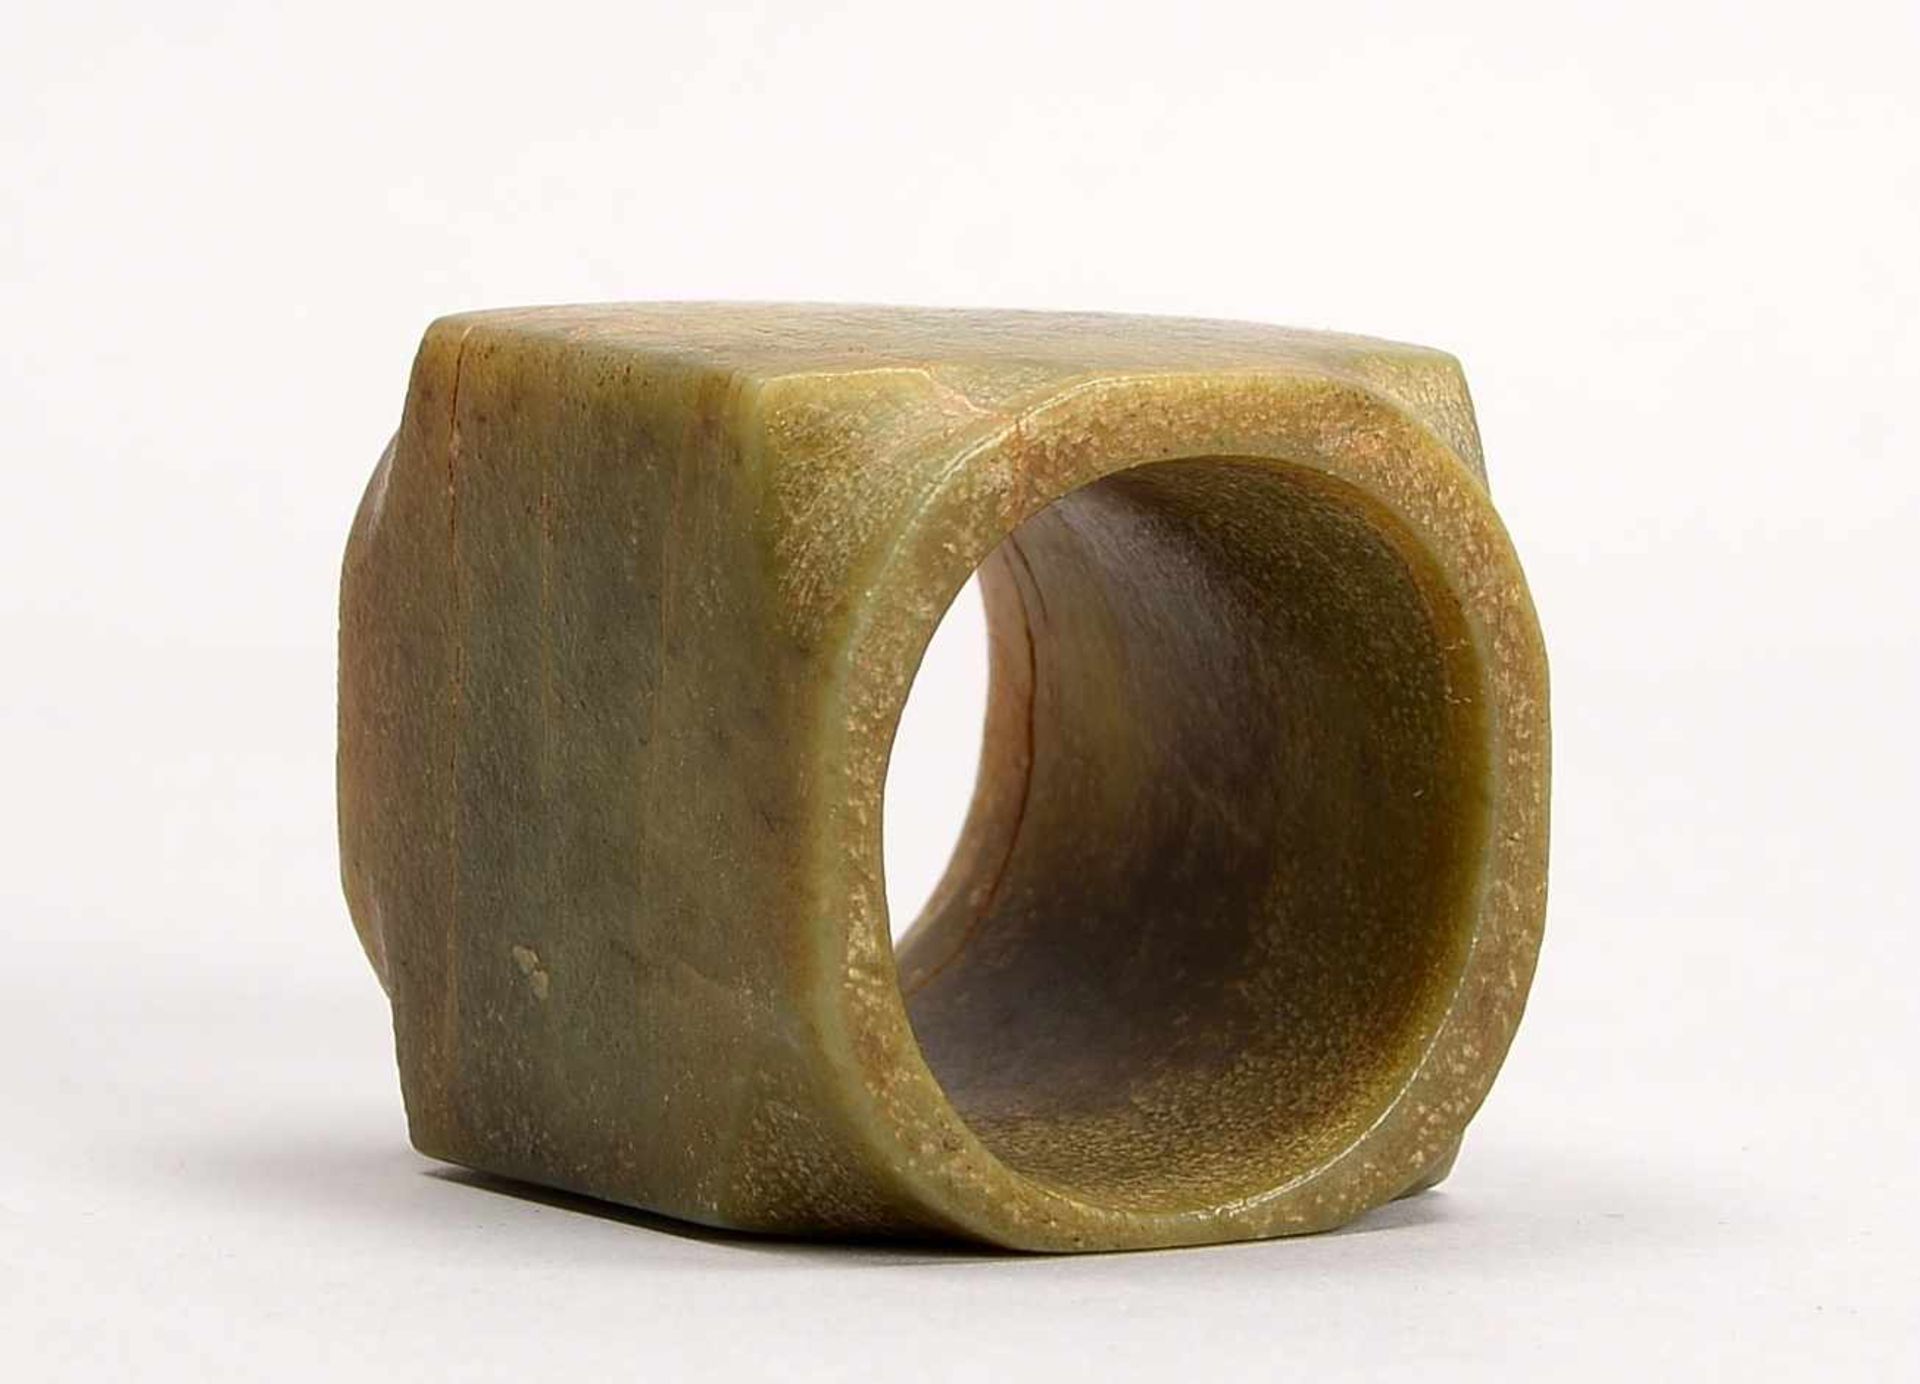 Jade-Objekt (wohl Grabbeilage), China; Höhe 6,5 cm, Breite 5,5 cm, Tiefe 5,5 cm, Innendurchmesser